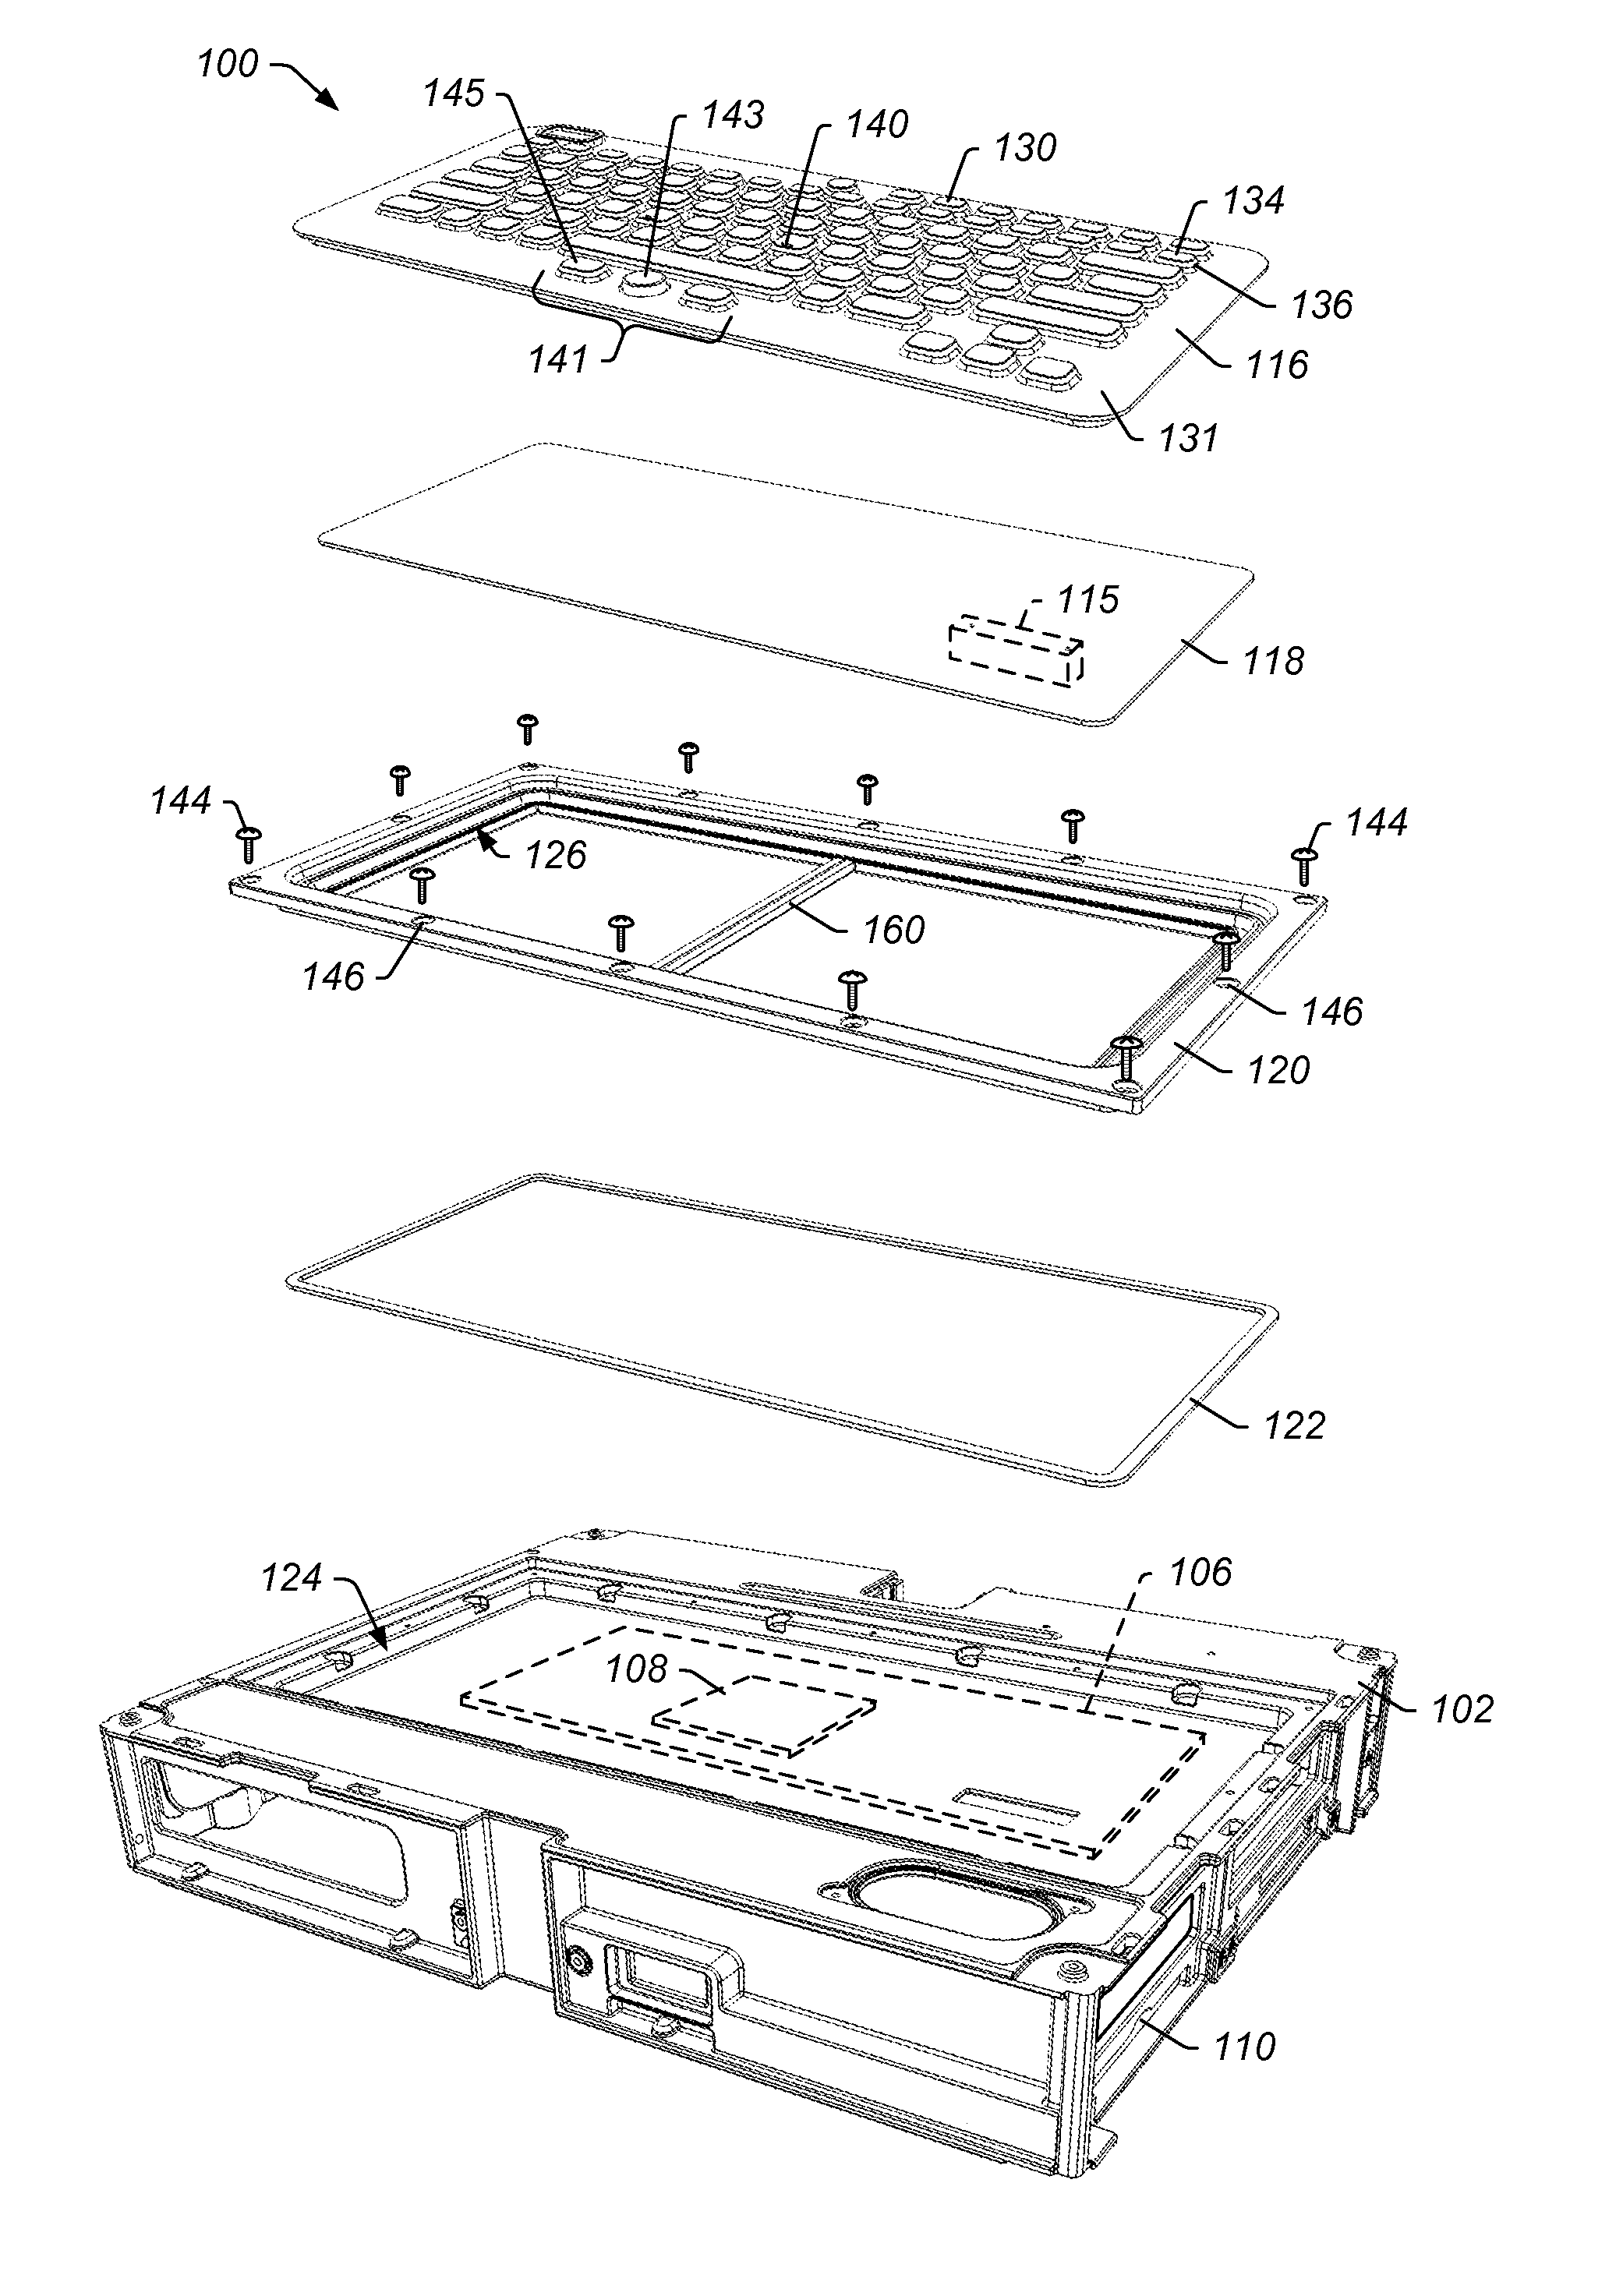 Panel Mount Keyboard System